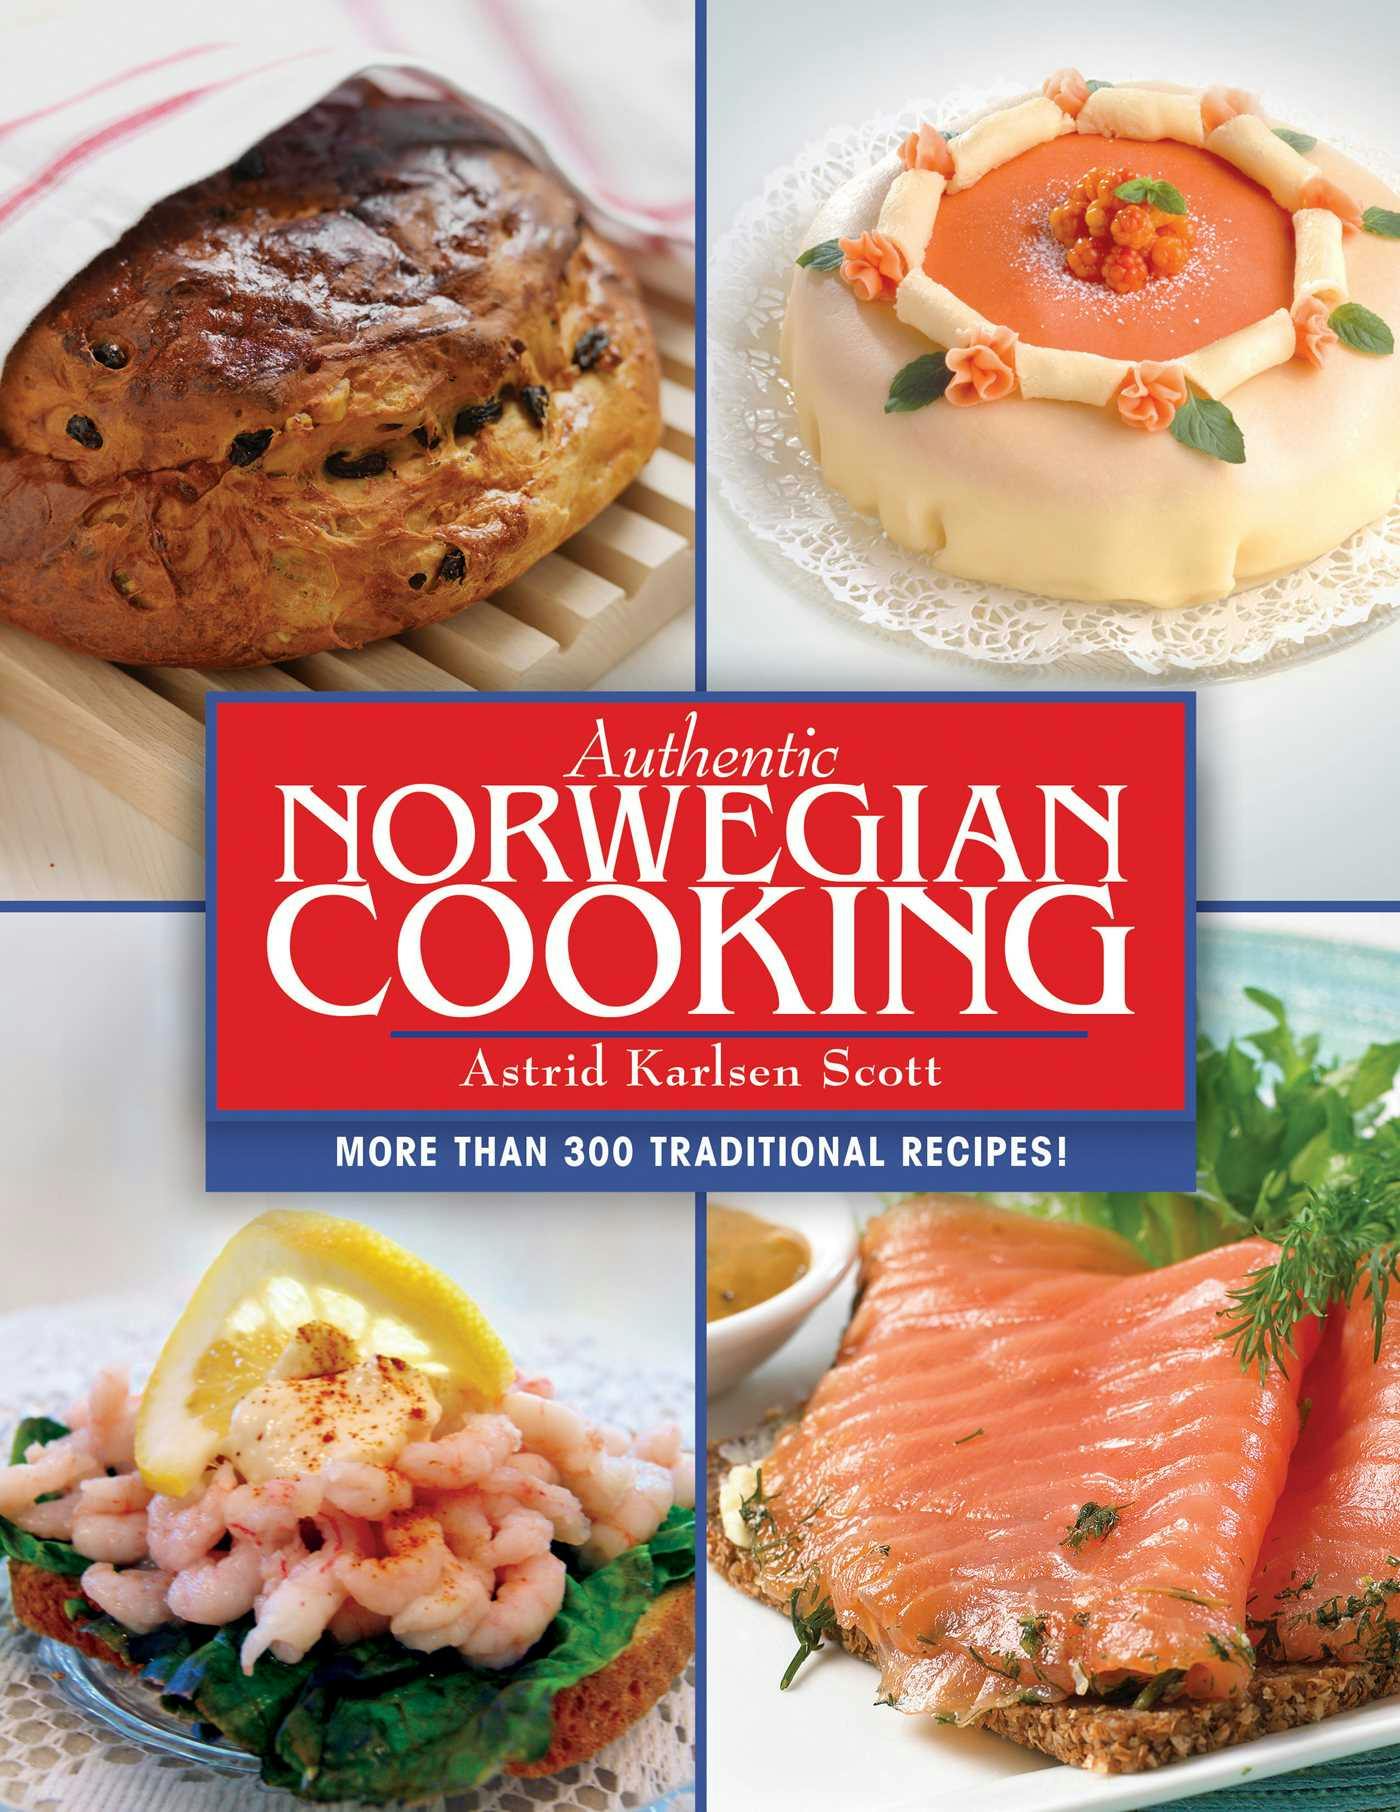 Authentic Norwegian Cooking - Astrid Karlsen Scott